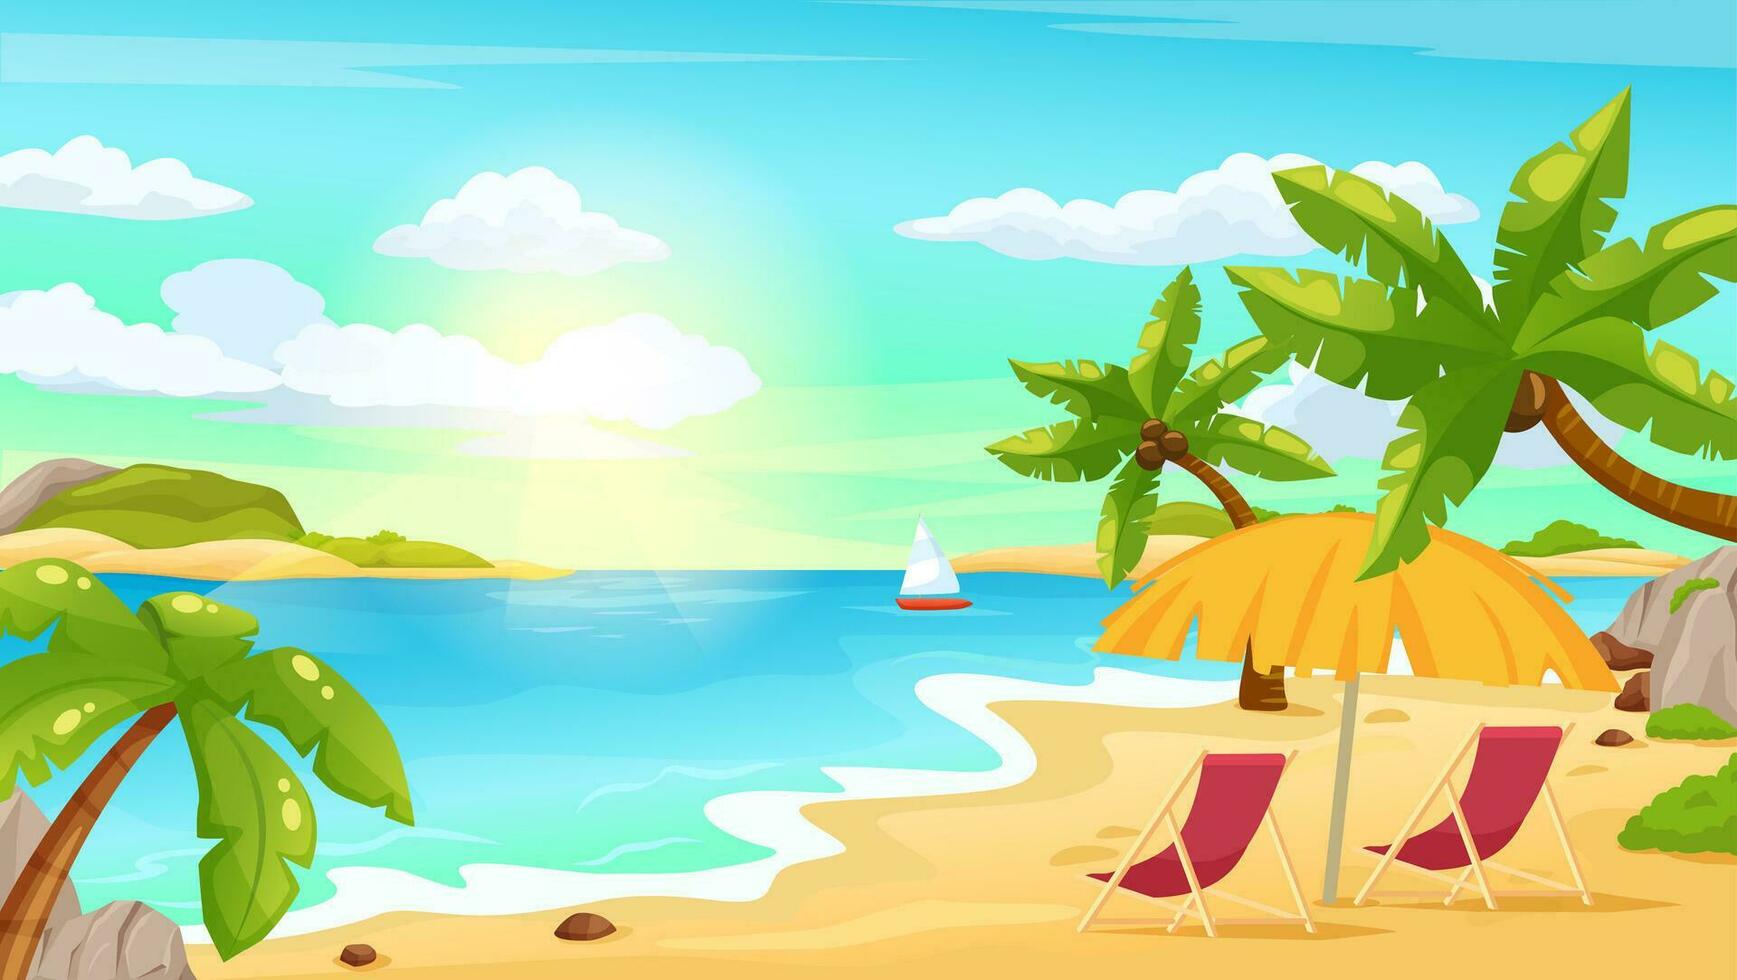 sonnig tropisch Strand Landschaft mit Palmen, Meer und Sonne Regenschirm. Sommer- Urlaub Ferien auf exotisch Insel, Strand Szene Vektor Illustration